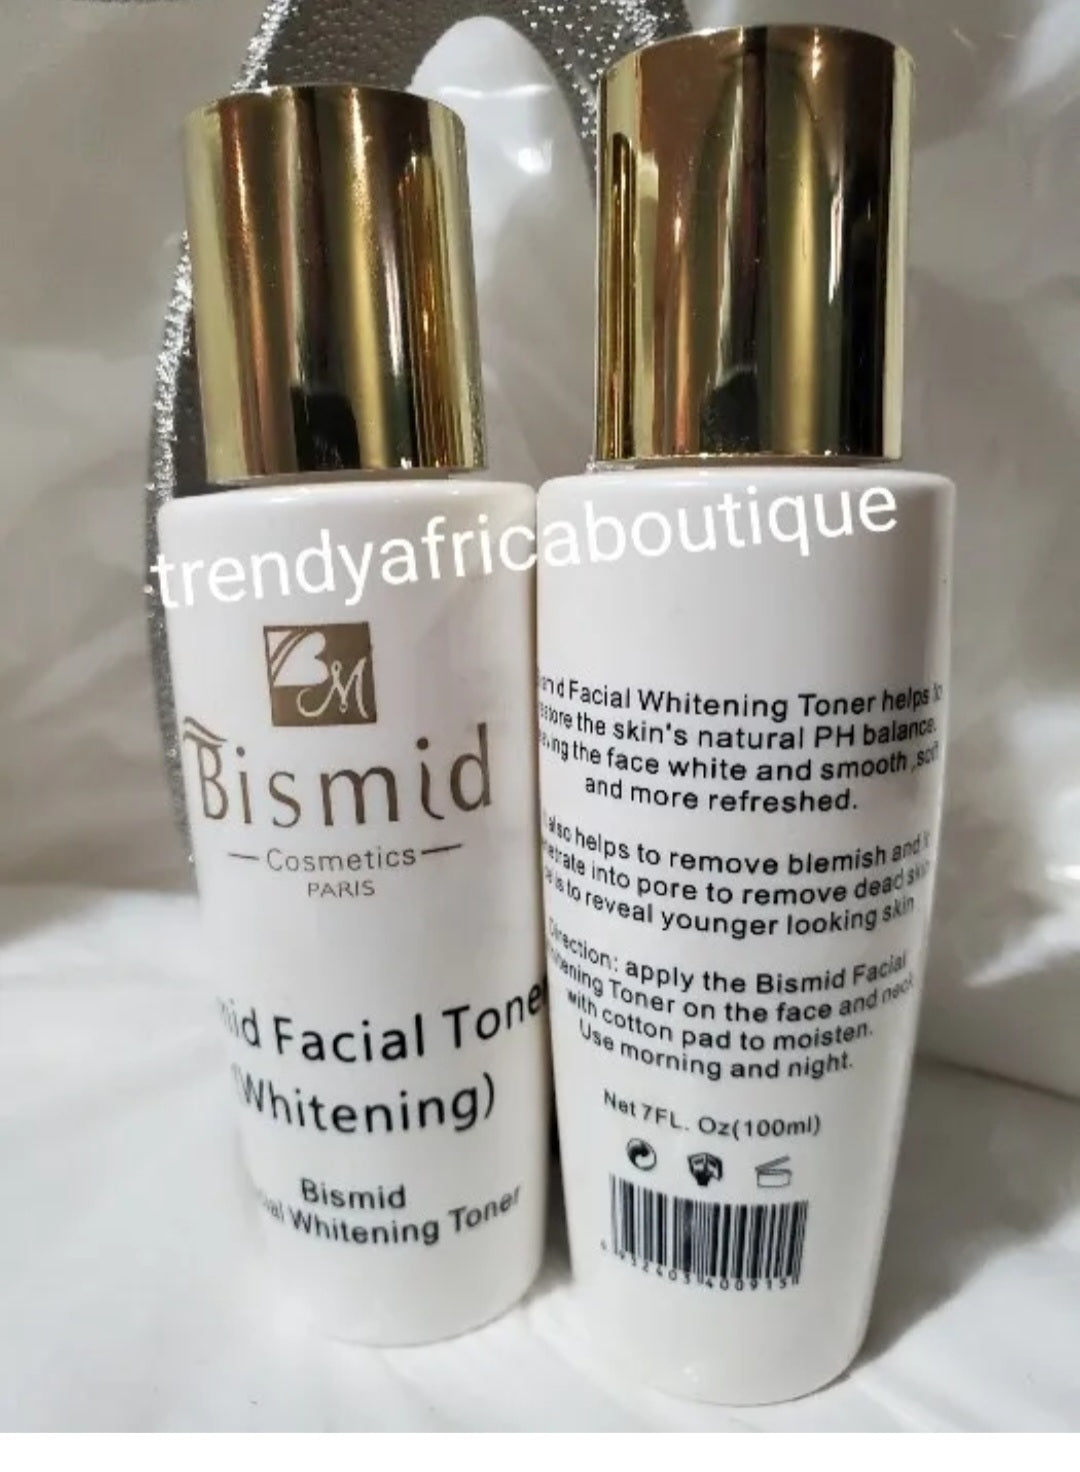 Bismid costmetics whitening face toner. Balance skin natural Ph. 100% satisfaction results. 100ml x 1 bottle